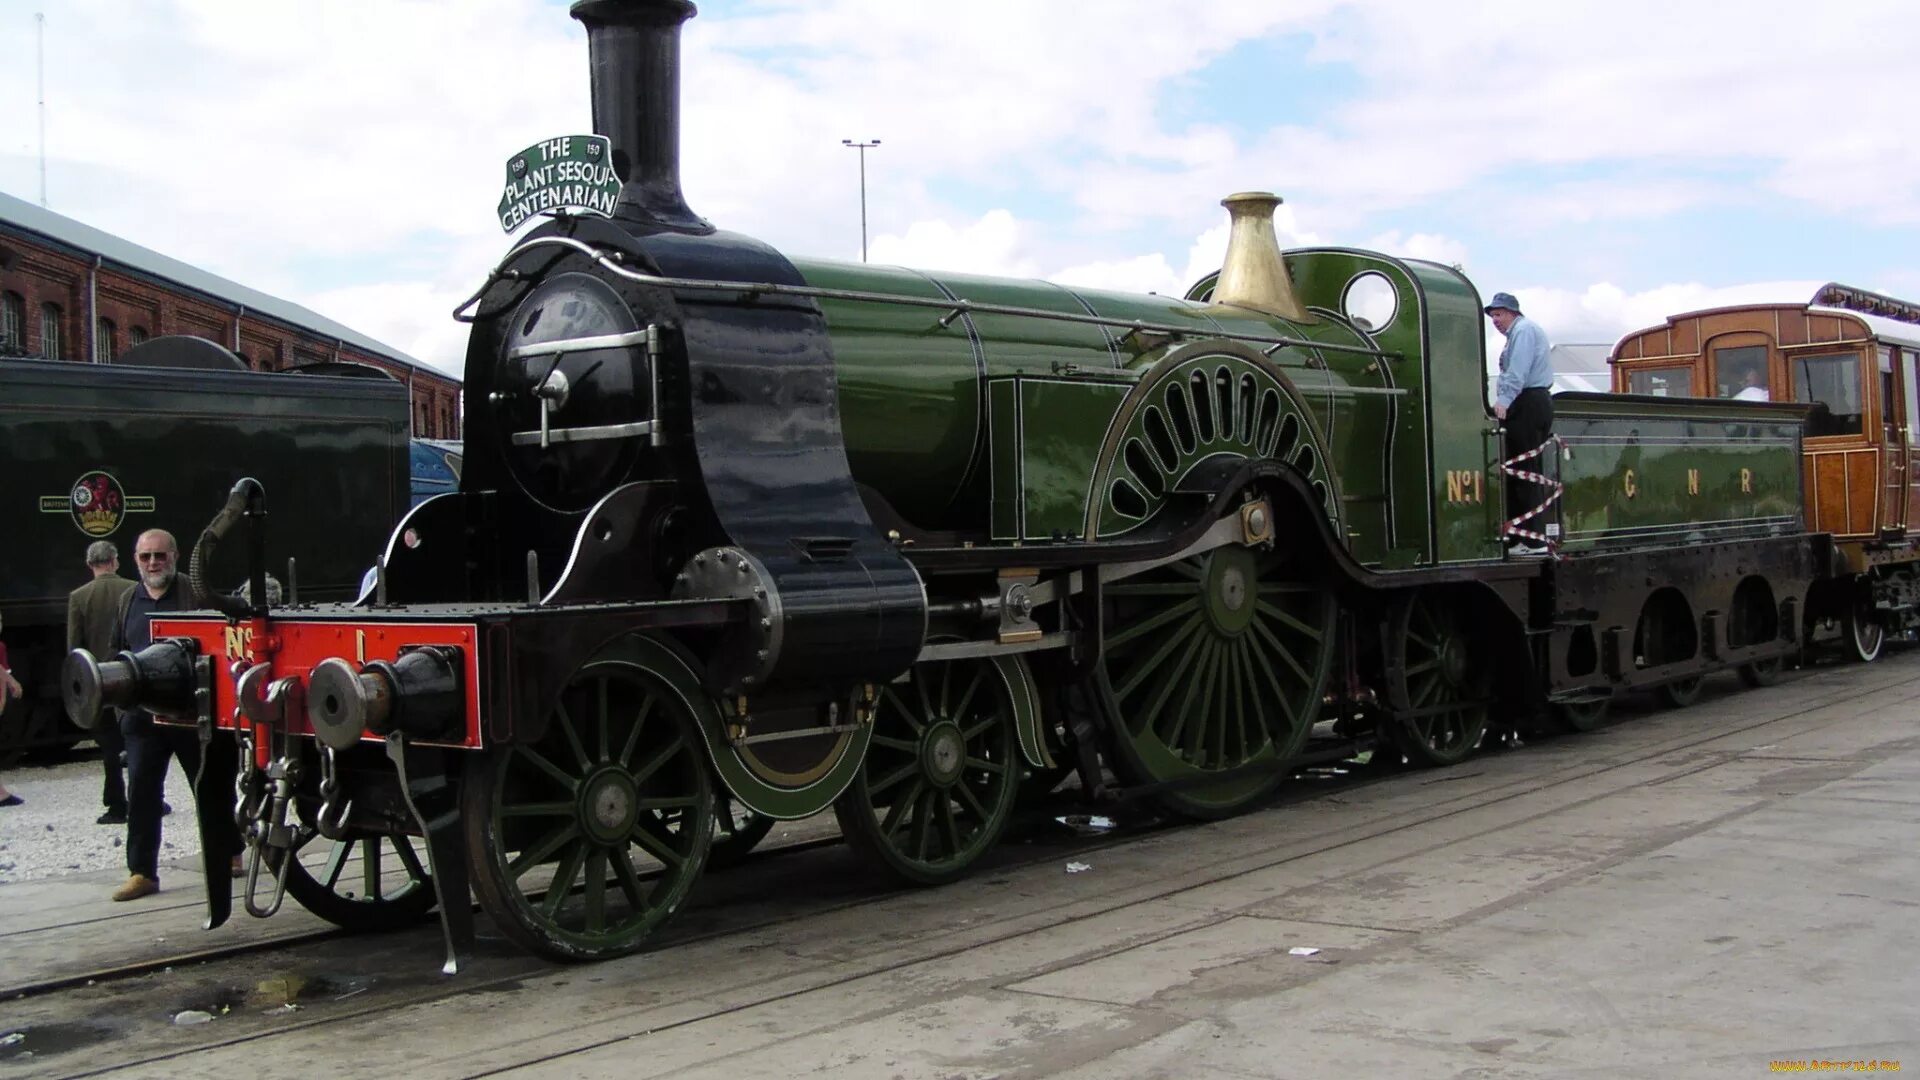 Паровозы кратко. Паровоз GNR 4 2 2. Первый паровой Локомотив Великобритания. GNR Stirling 4-2-2. Паровозы Англии 19 века.